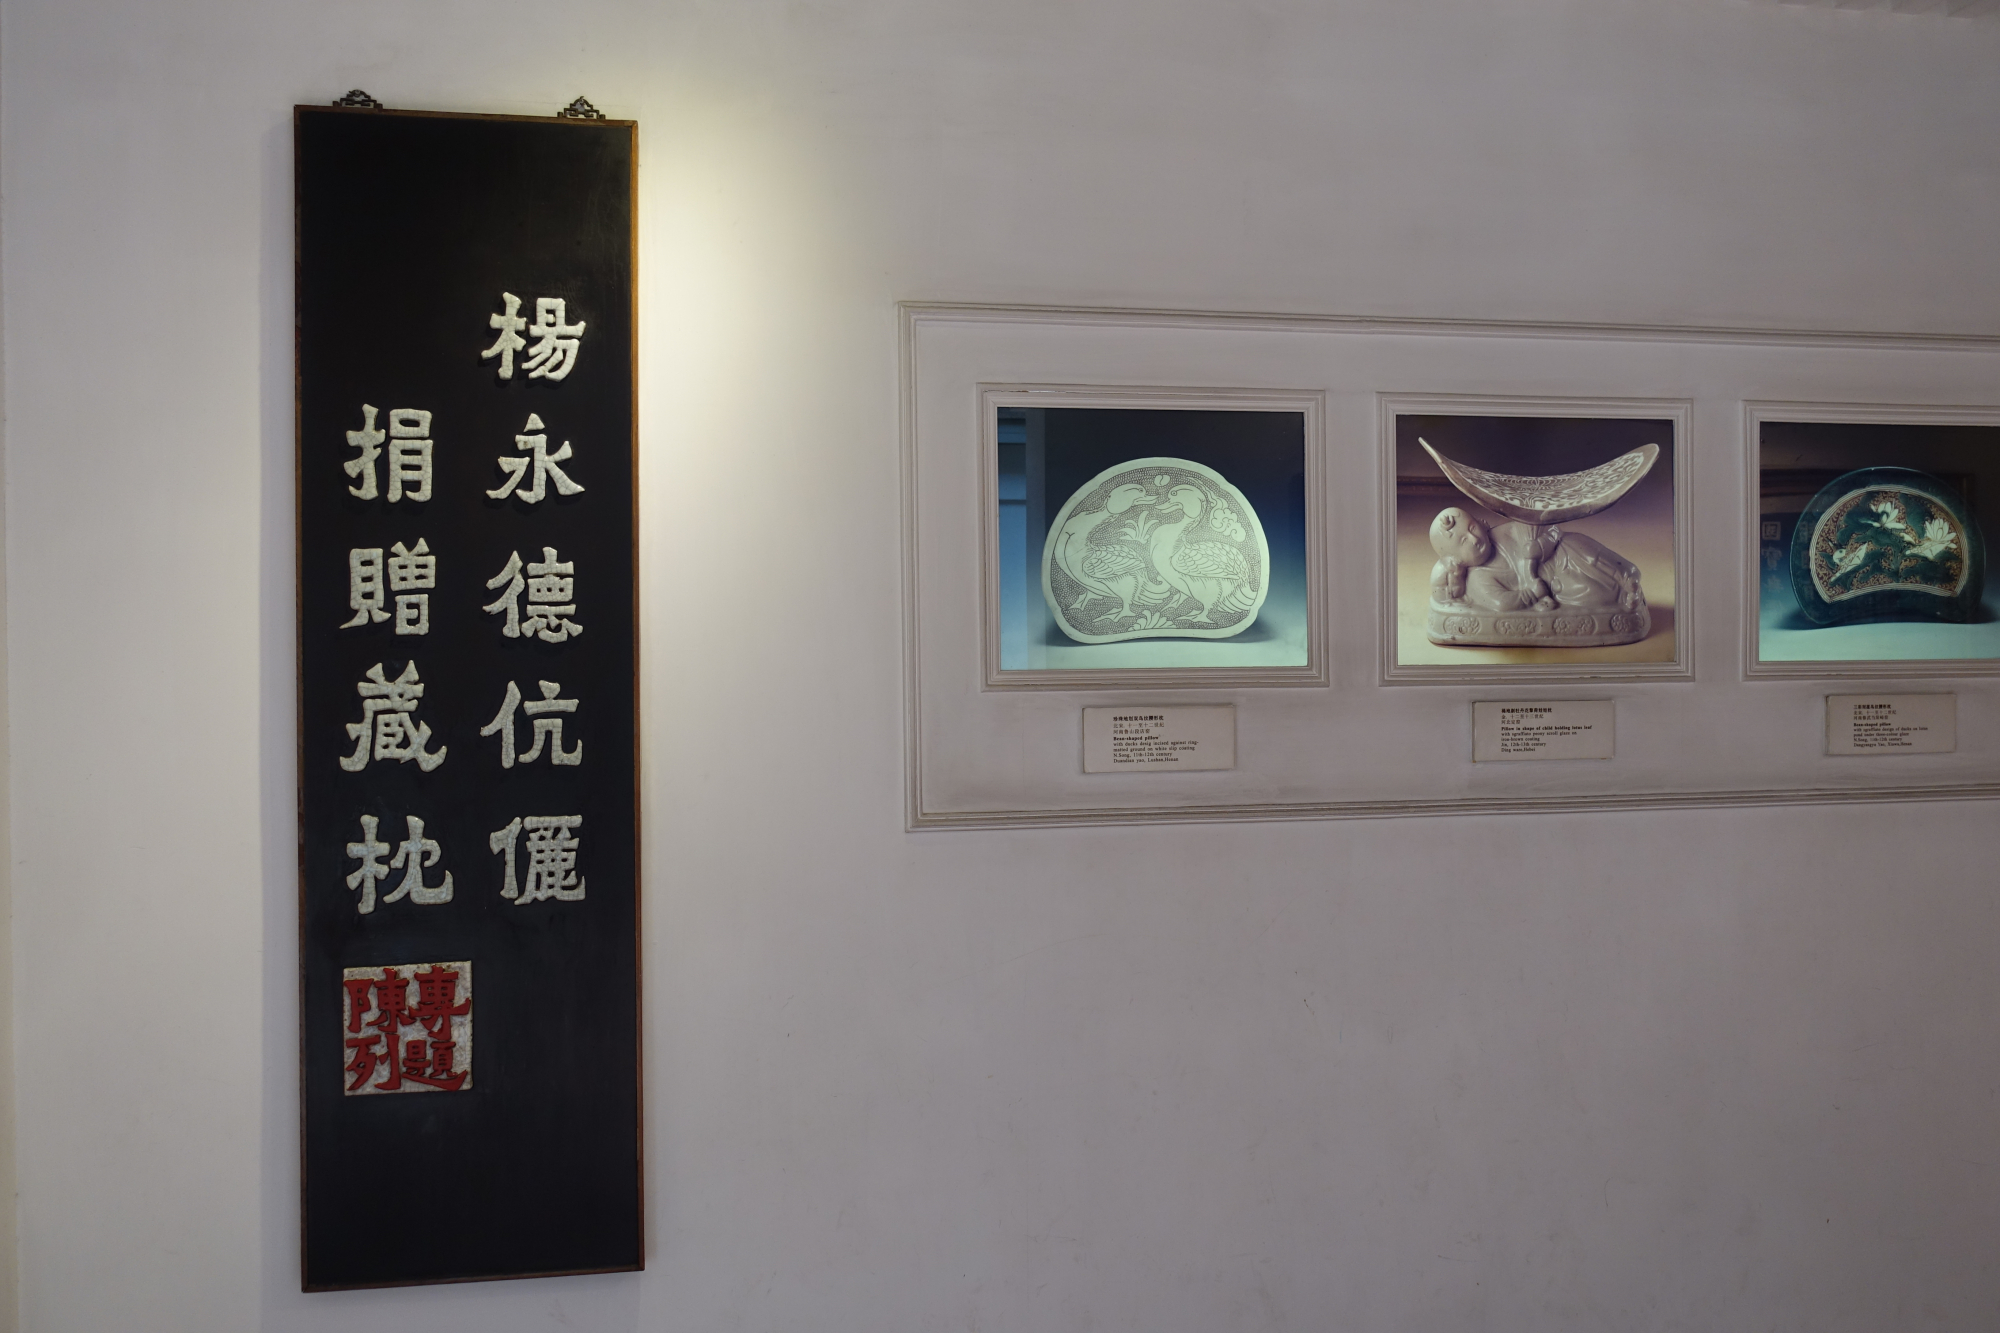 广州西汉南越王博物馆详细游览攻略 年 宁乐熙博客